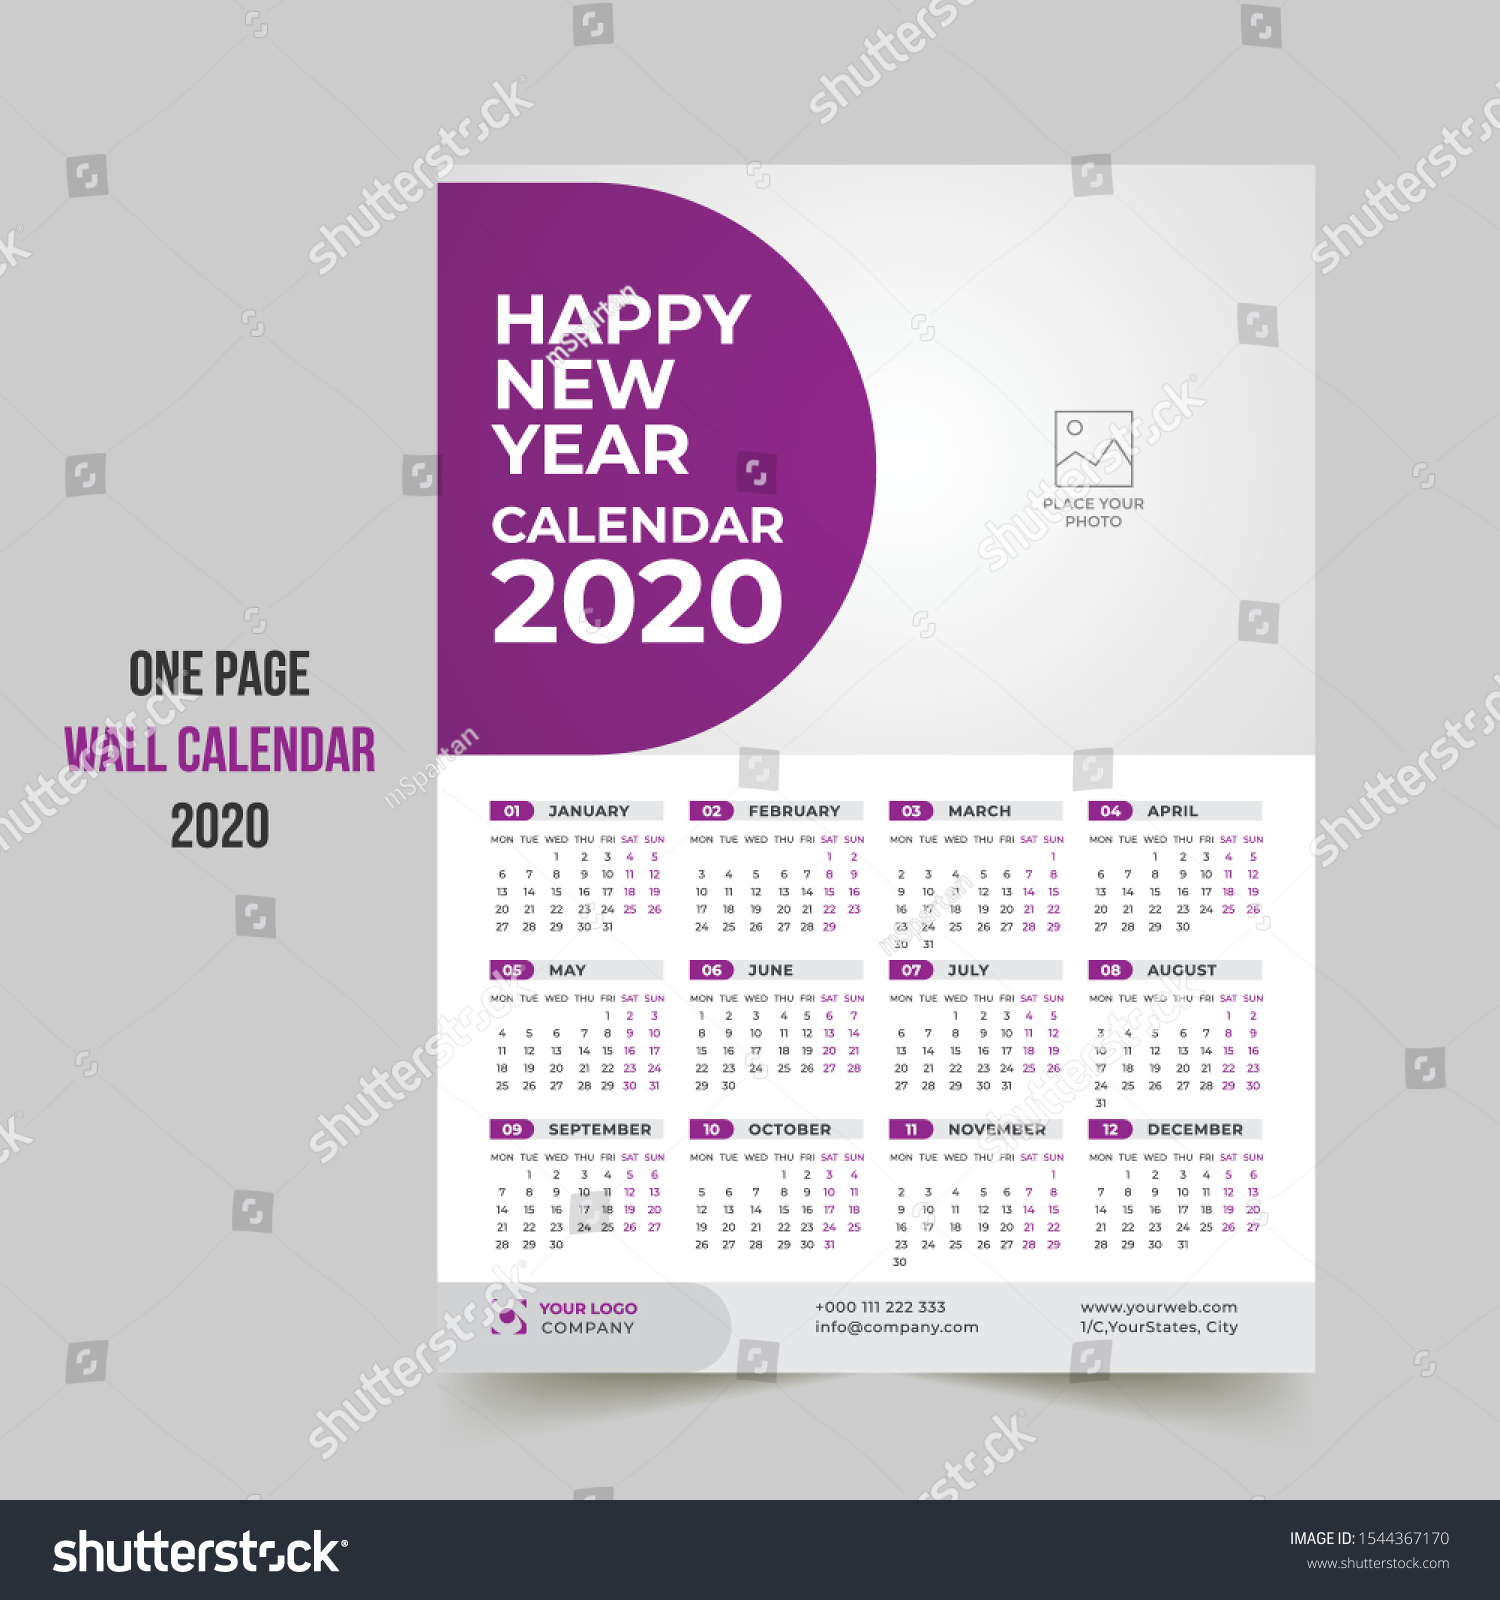 Wall Calendar Template from image.shutterstock.com